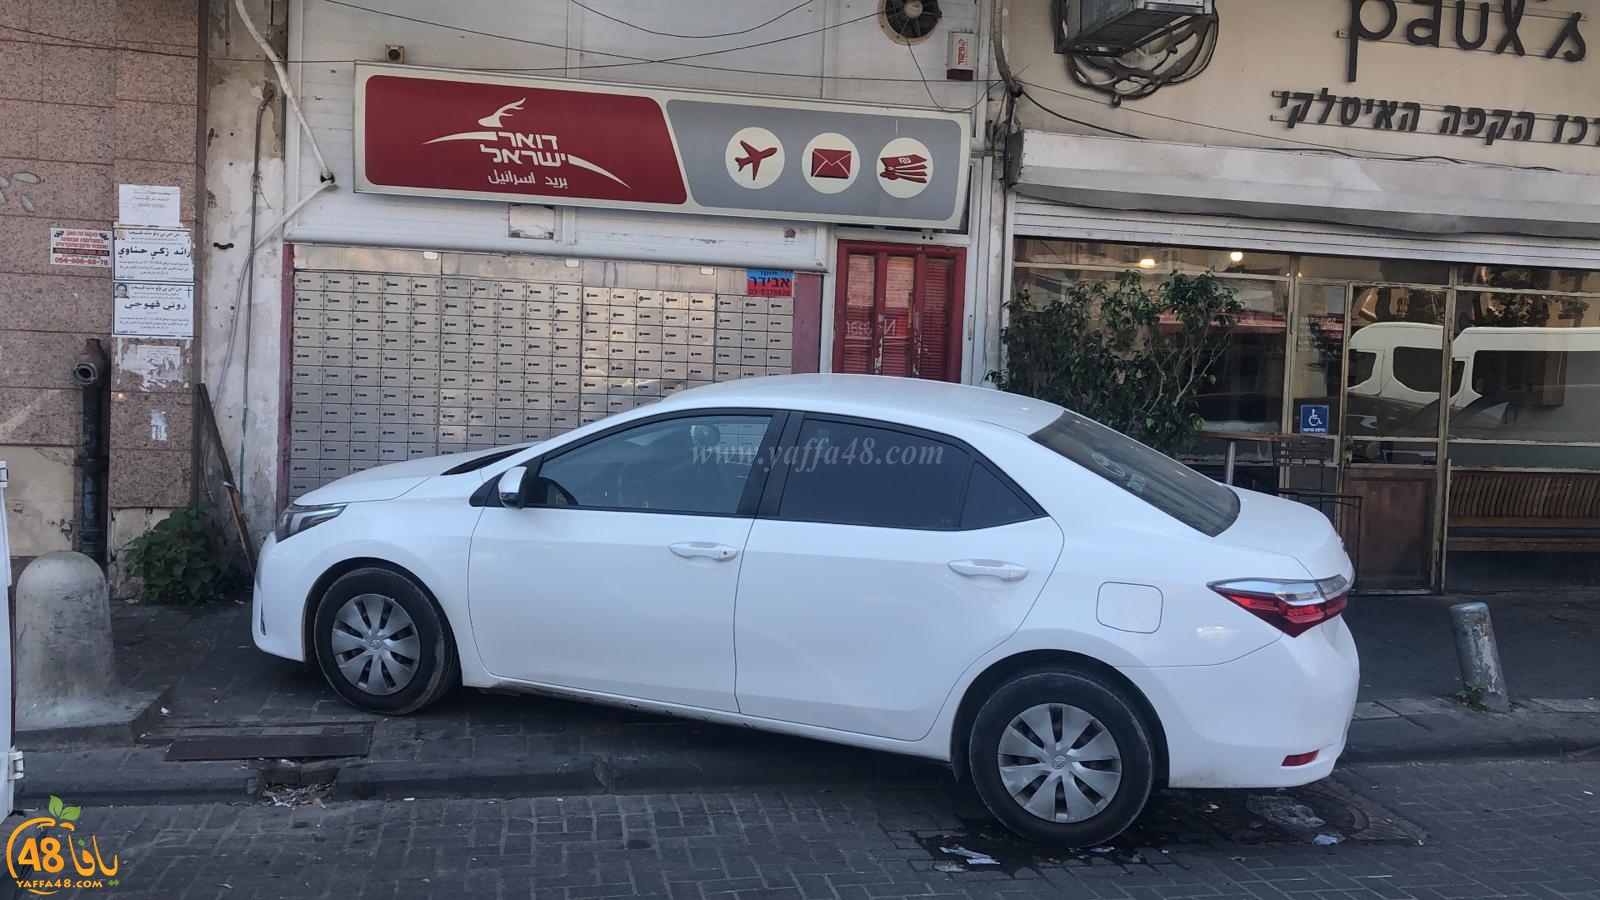  يافا: محاولة سطو فاشلة على فرع البريد في شارع ييفت 